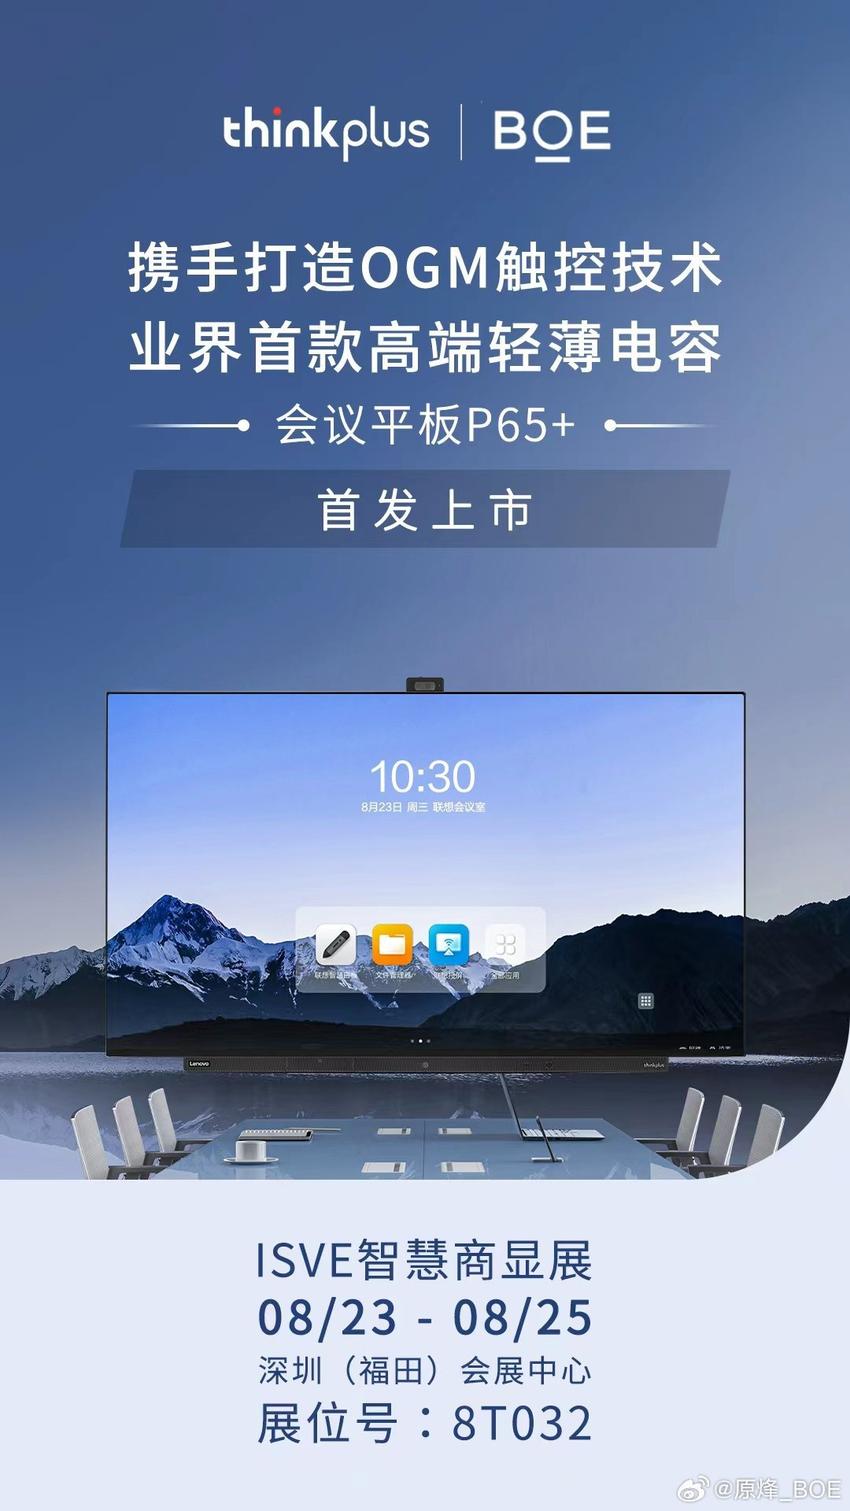 京东方联合联想thinkplus推出业界首款高端电容会议平板